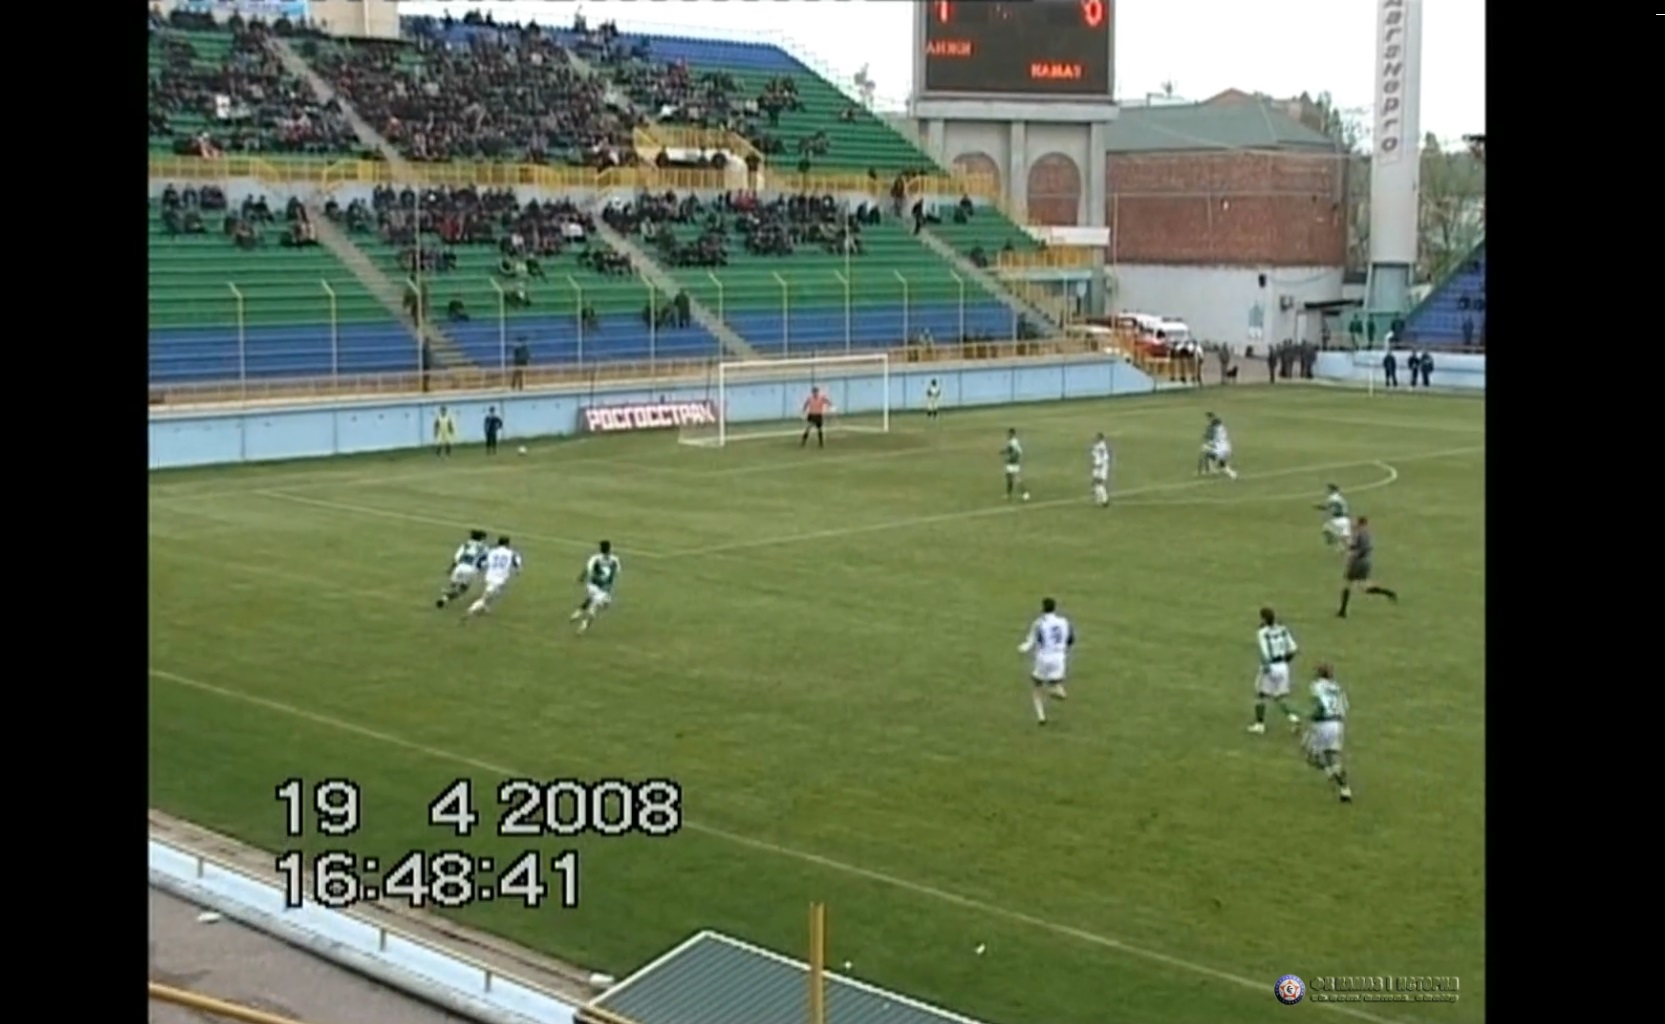 «Анжи» (Махачкала) –«КАМАЗ» (Набережные Челны) 2:0. Первый дивизион. 19 апреля 2008 г.